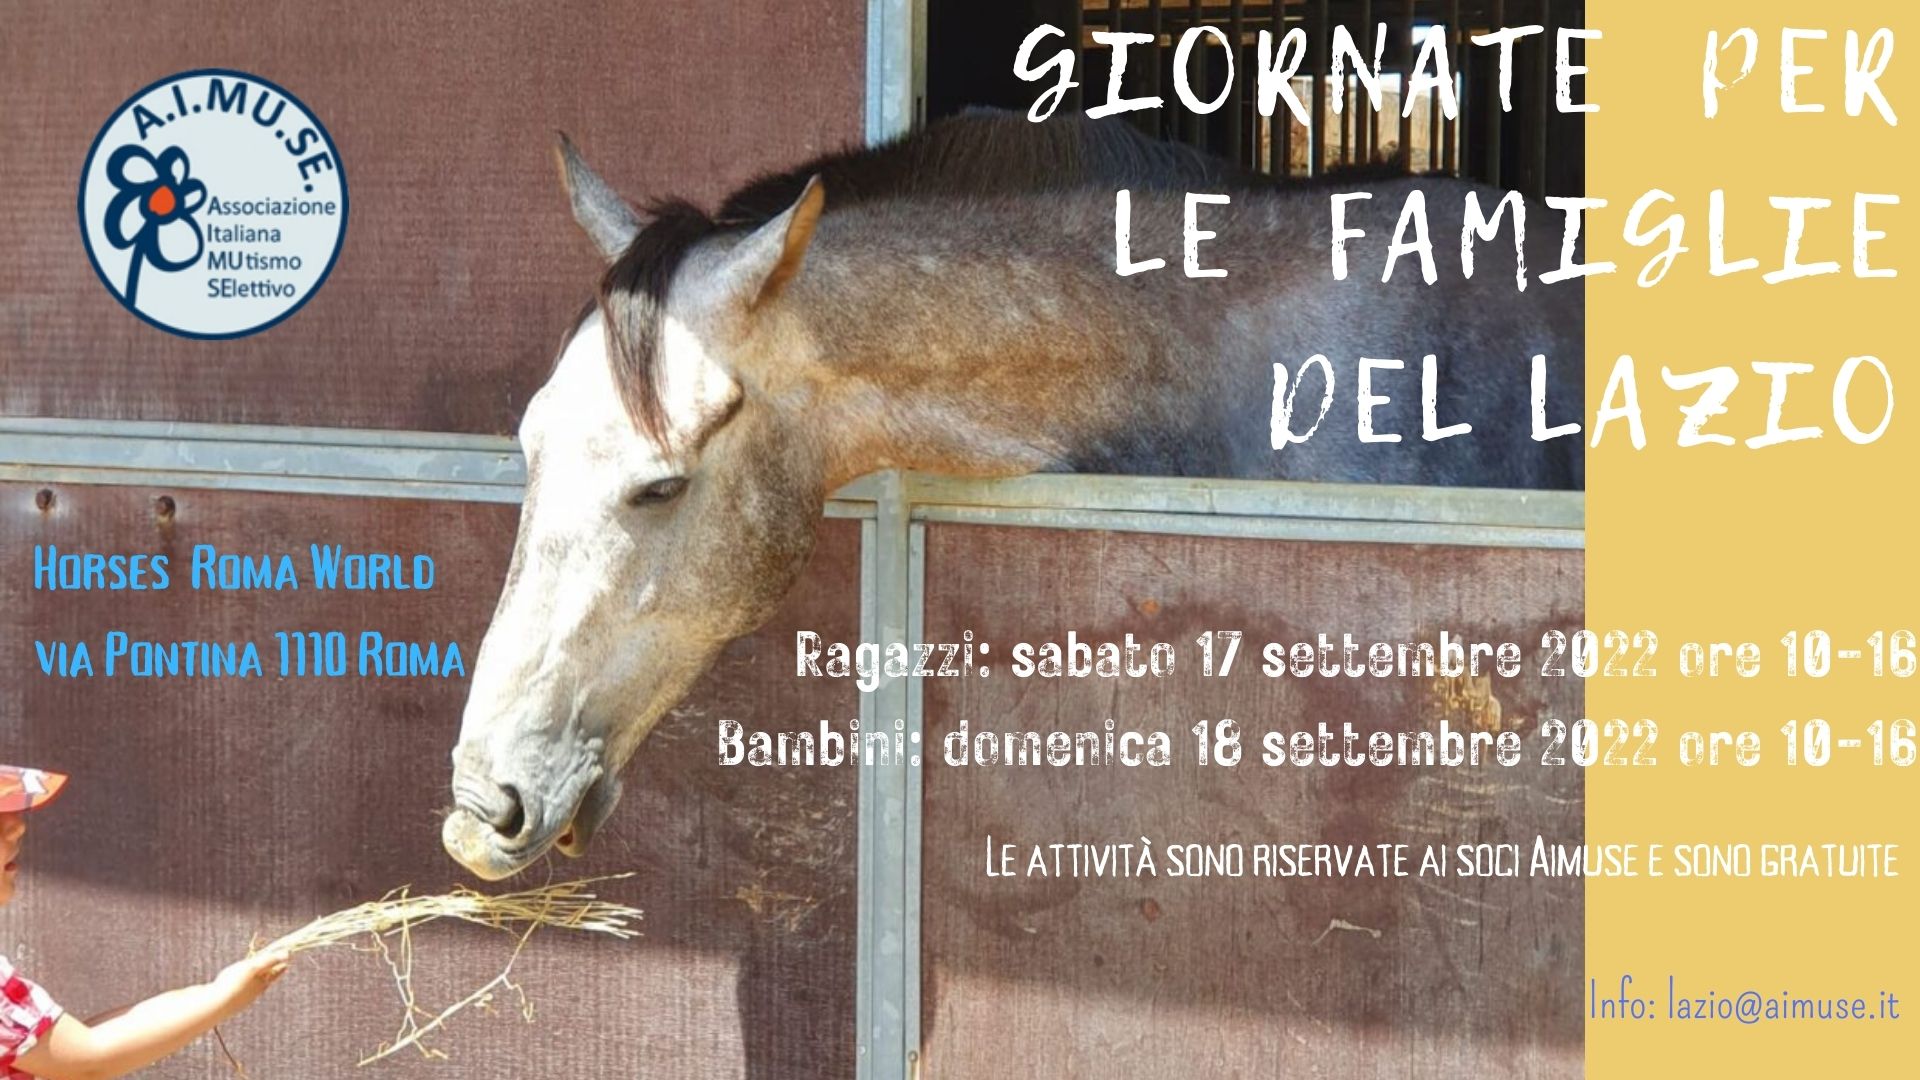 Lazio – Giornate per le famiglie: sabato 17 e domenica 18 settembre 2022